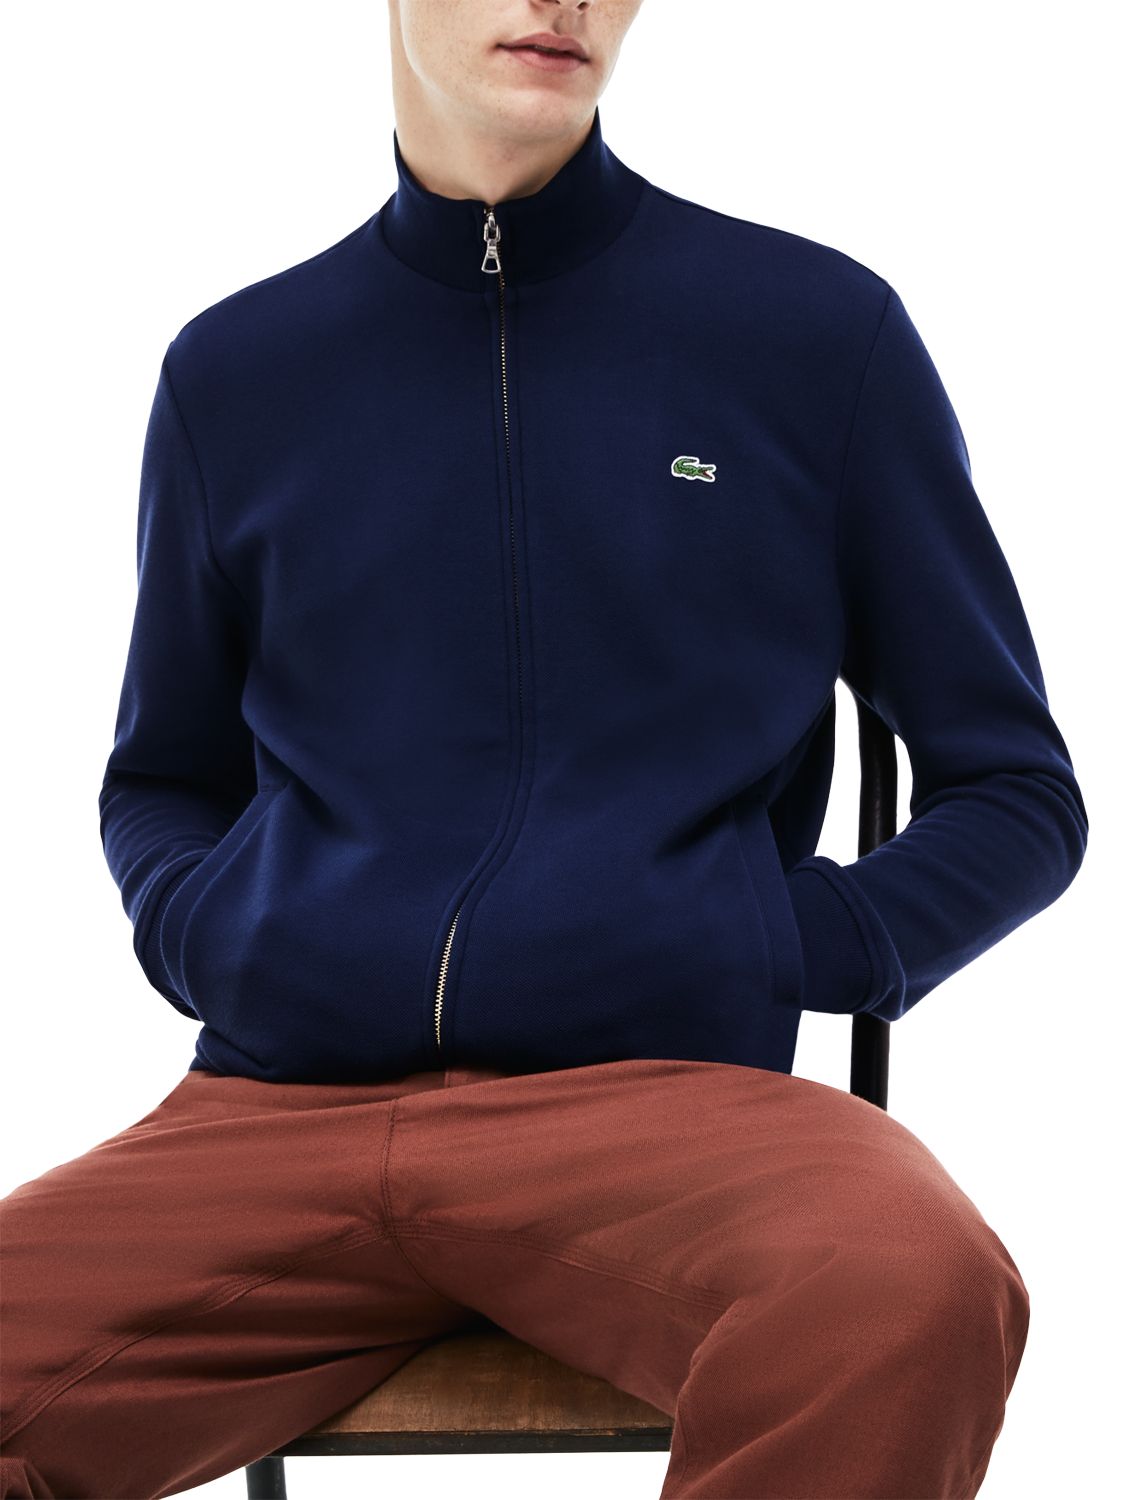 Lacoste Classic Zip Through Sweatshirt, Navy, M